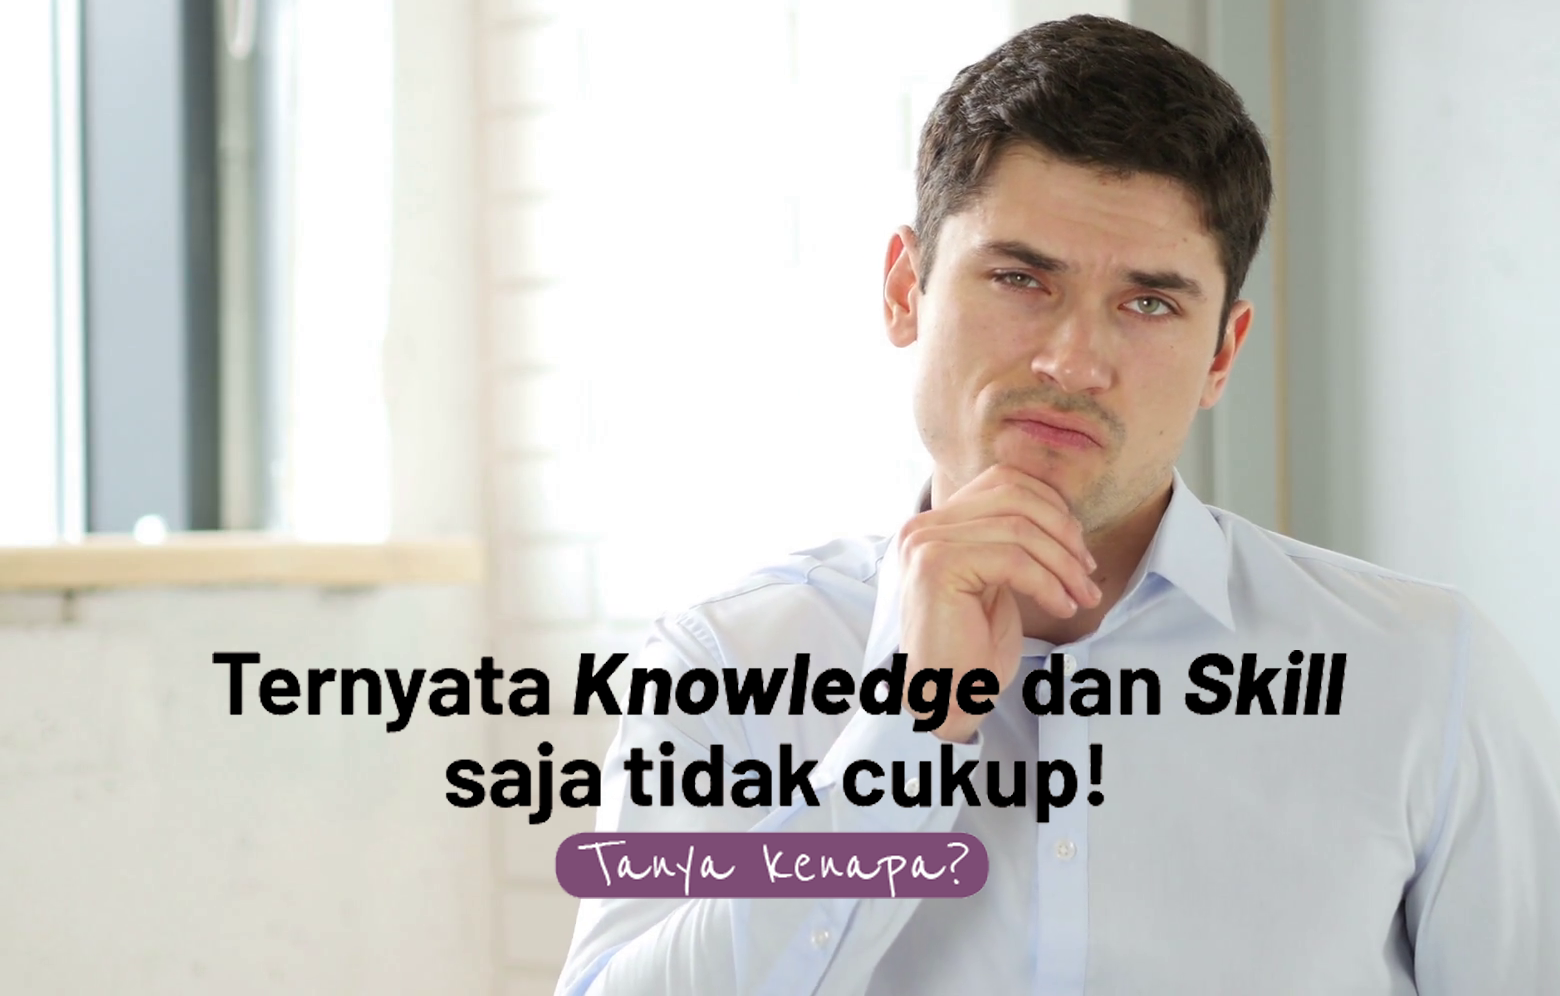 Ternyata Knowledge dan Skill saja tidak cukup Tanya kenapa